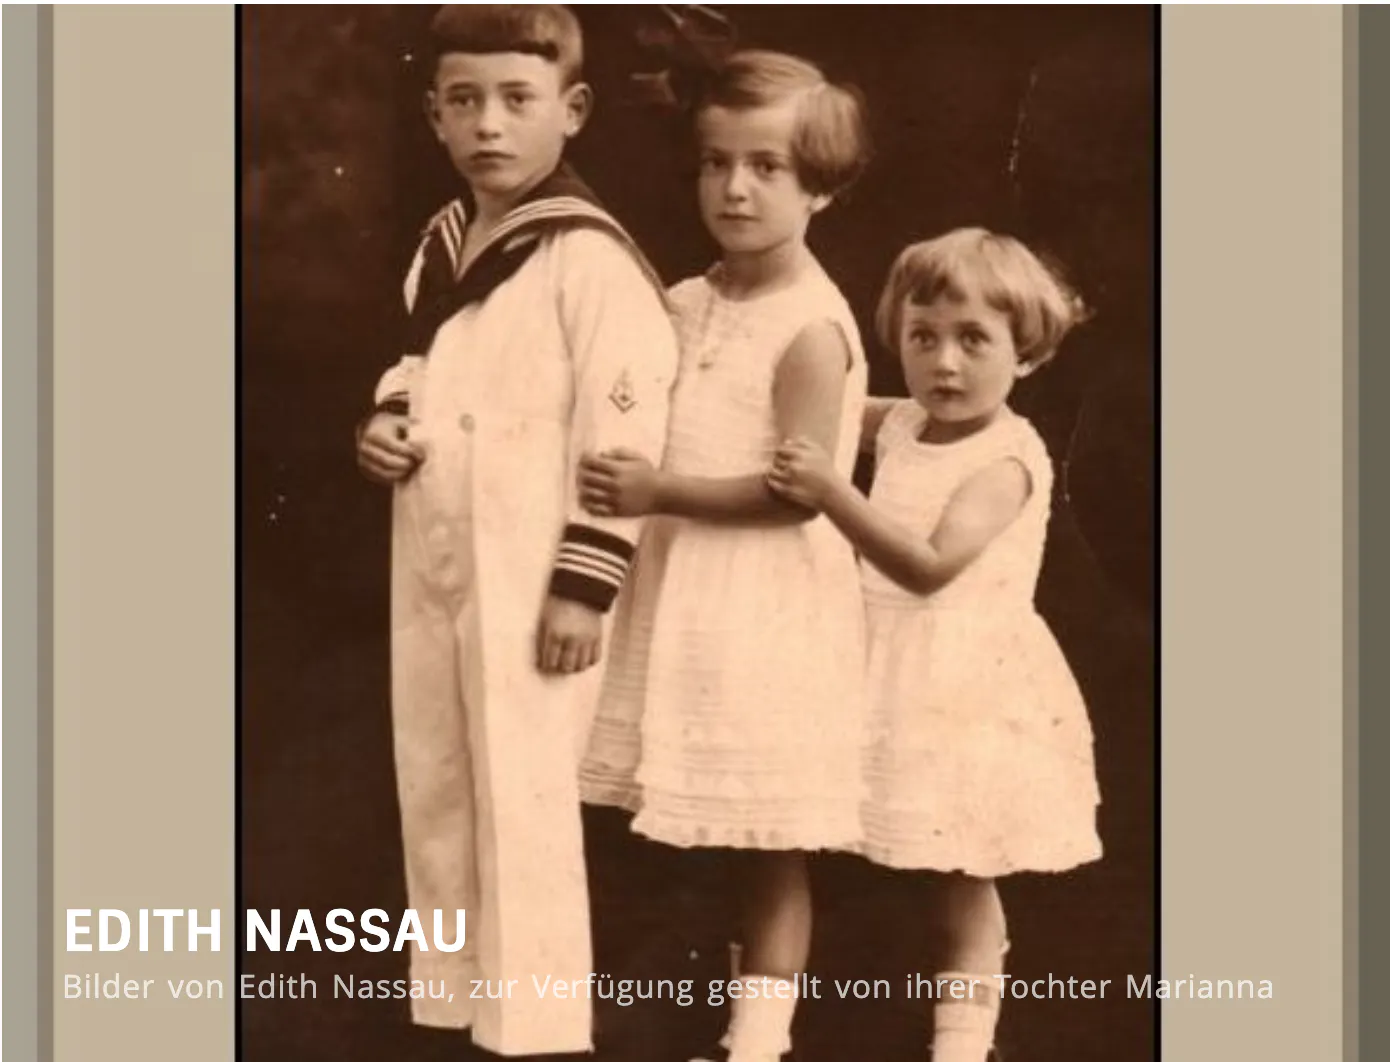 Titelbild der Bildergalerie von Edith Nassau. Auf dem Bild zu sehen: drei Kinder